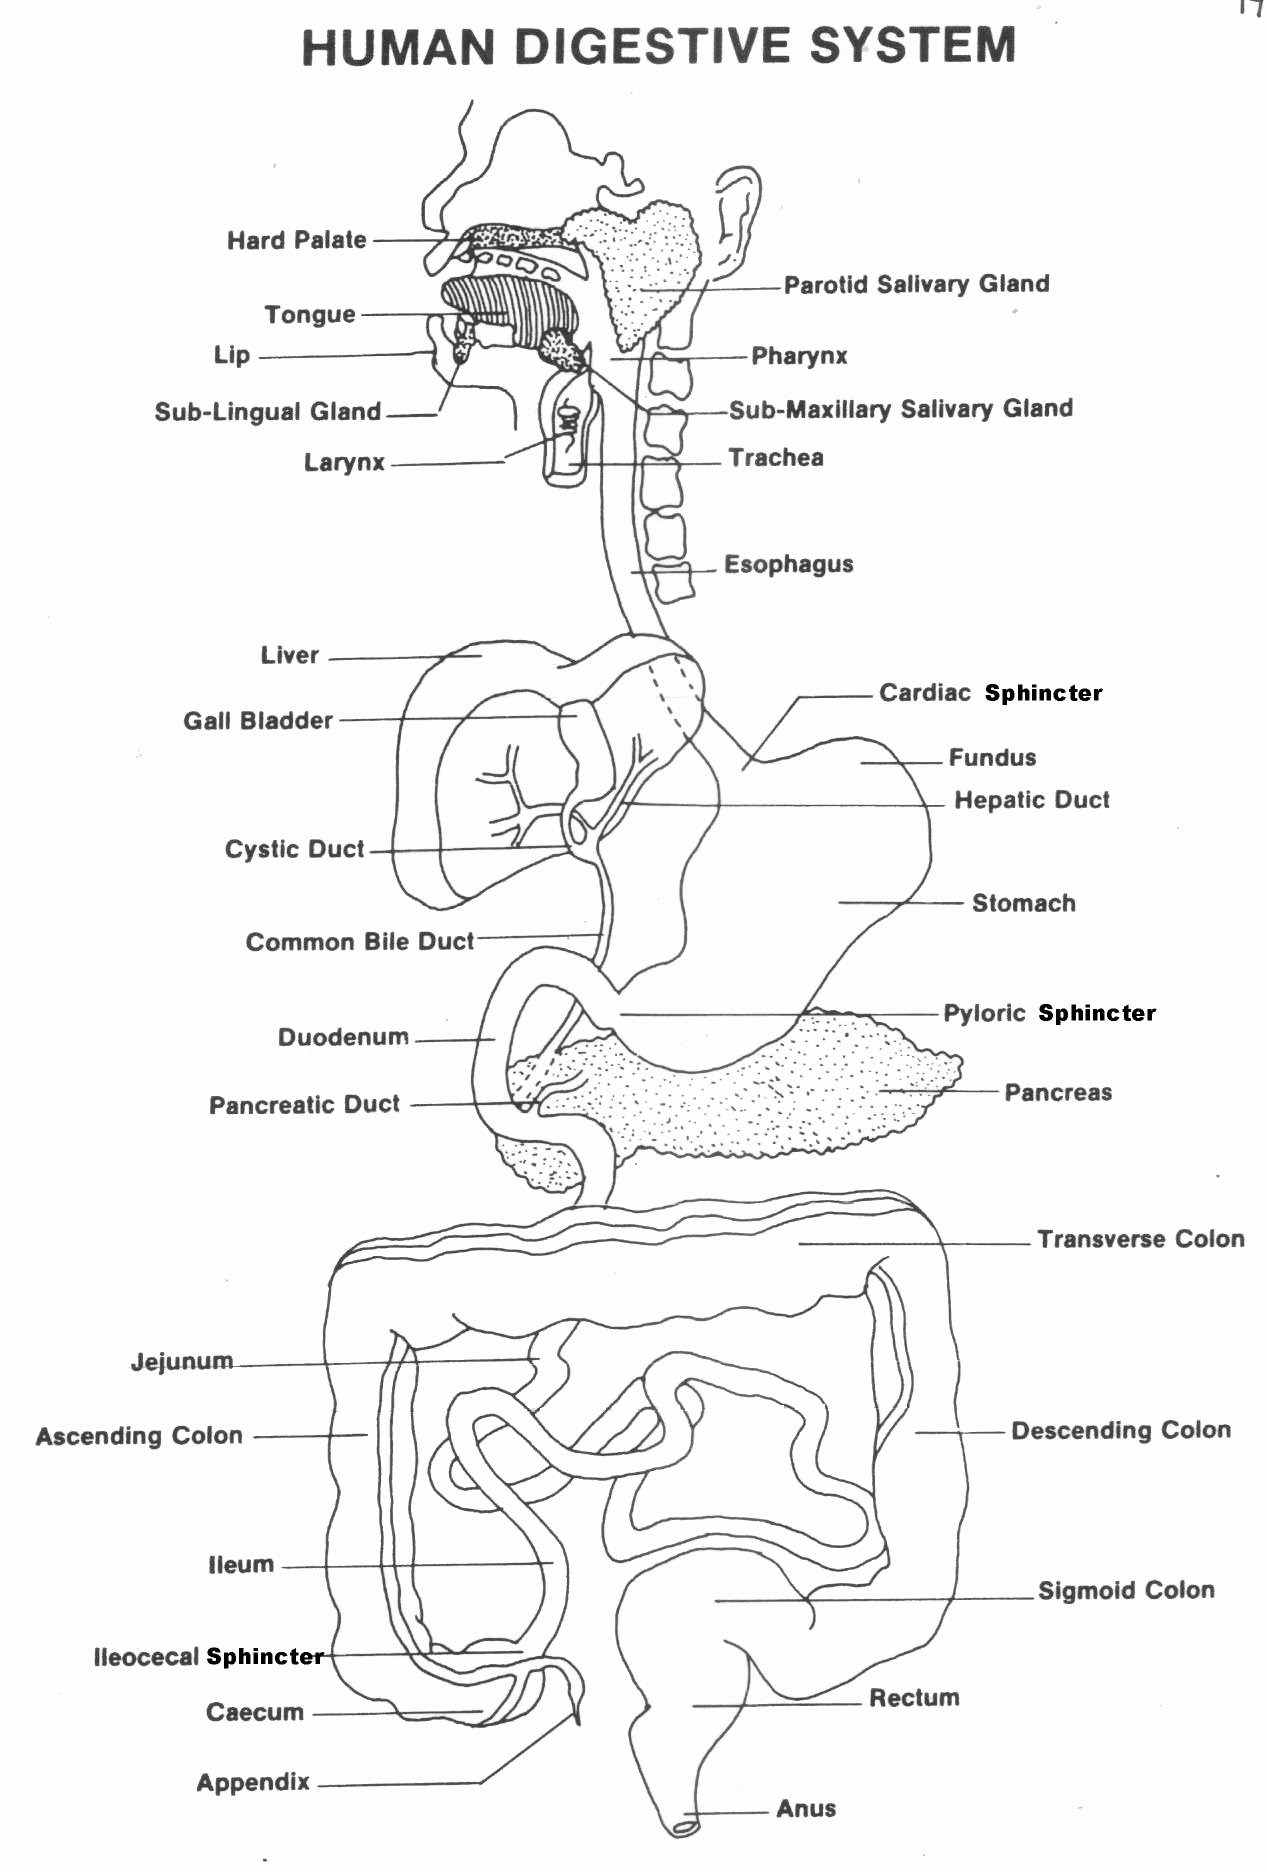 Human Digestive System Worksheet Elegant Picture Of Parts Of Human Digestive System Human Digestive